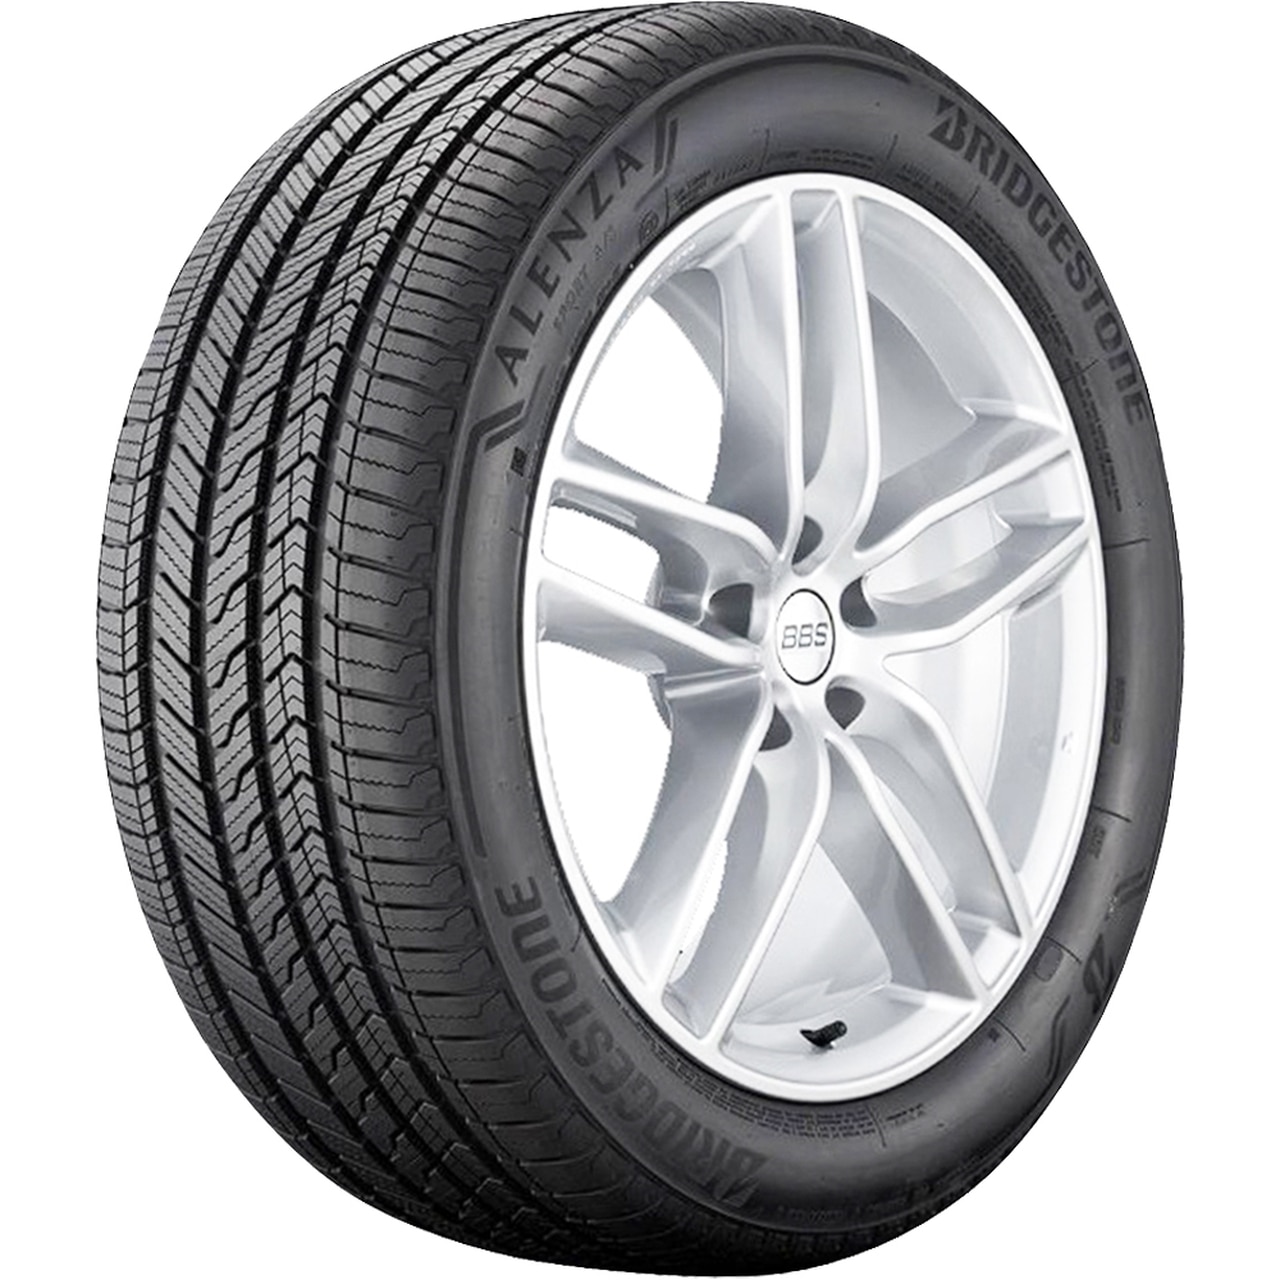 Gomme Nuove Bridgestone 235/55 R19 105T ALENZA SPORT A/S XL pneumatici nuovi Estivo